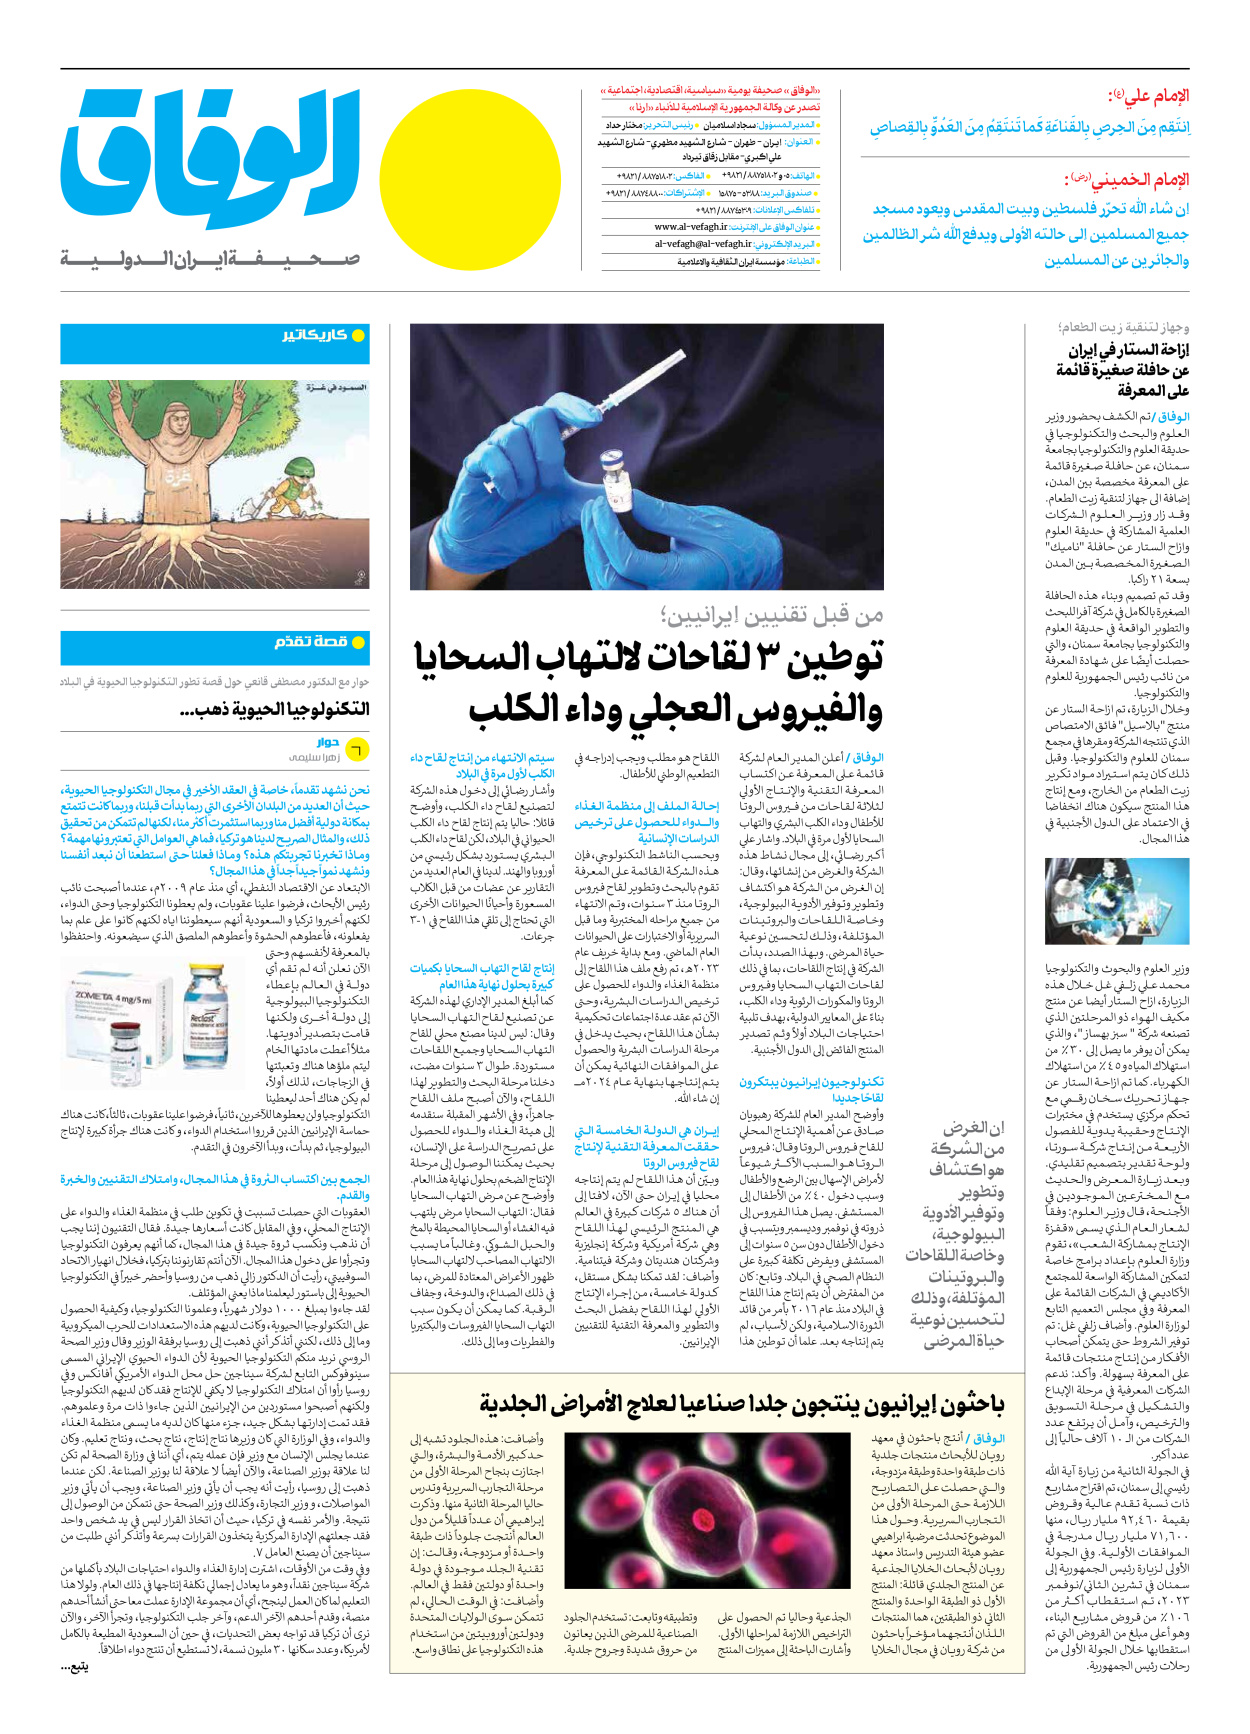 صحیفة ایران الدولیة الوفاق - العدد سبعة آلاف وأربعمائة وثمانون - ٢١ أبريل ٢٠٢٤ - الصفحة ۸